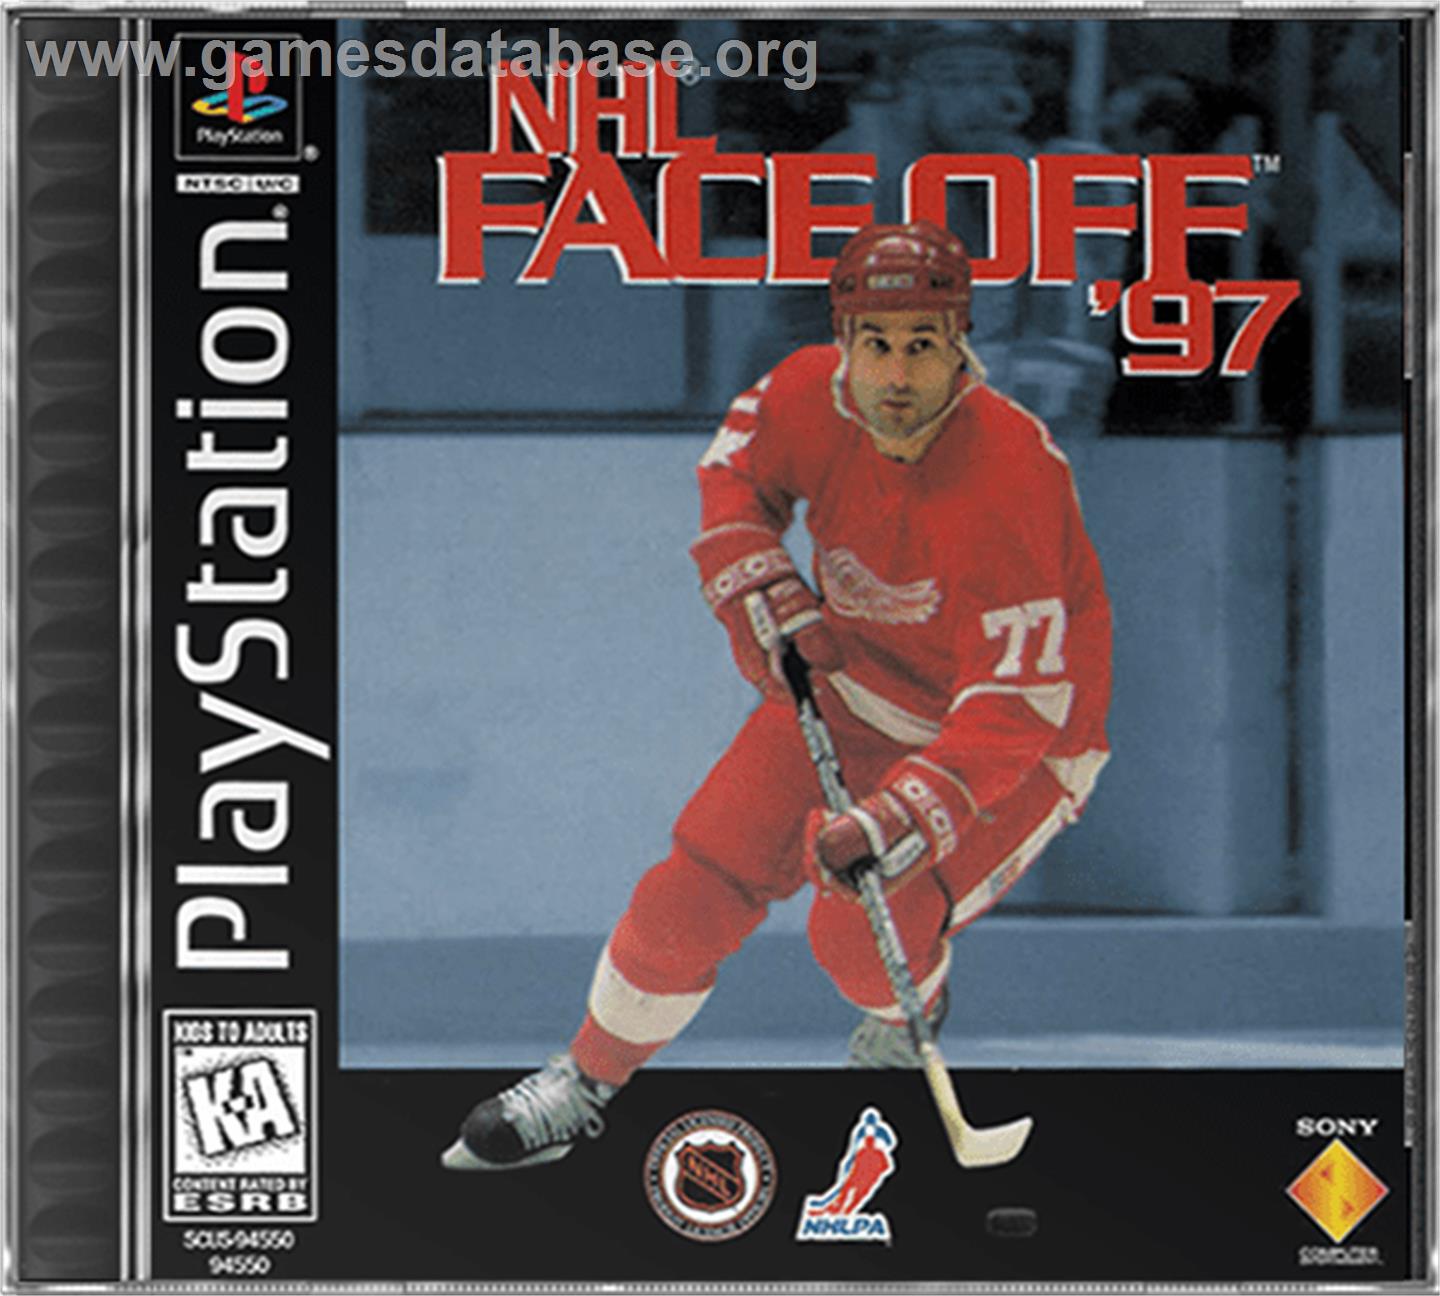 NHL FaceOff '97 - Sony Playstation - Artwork - Box